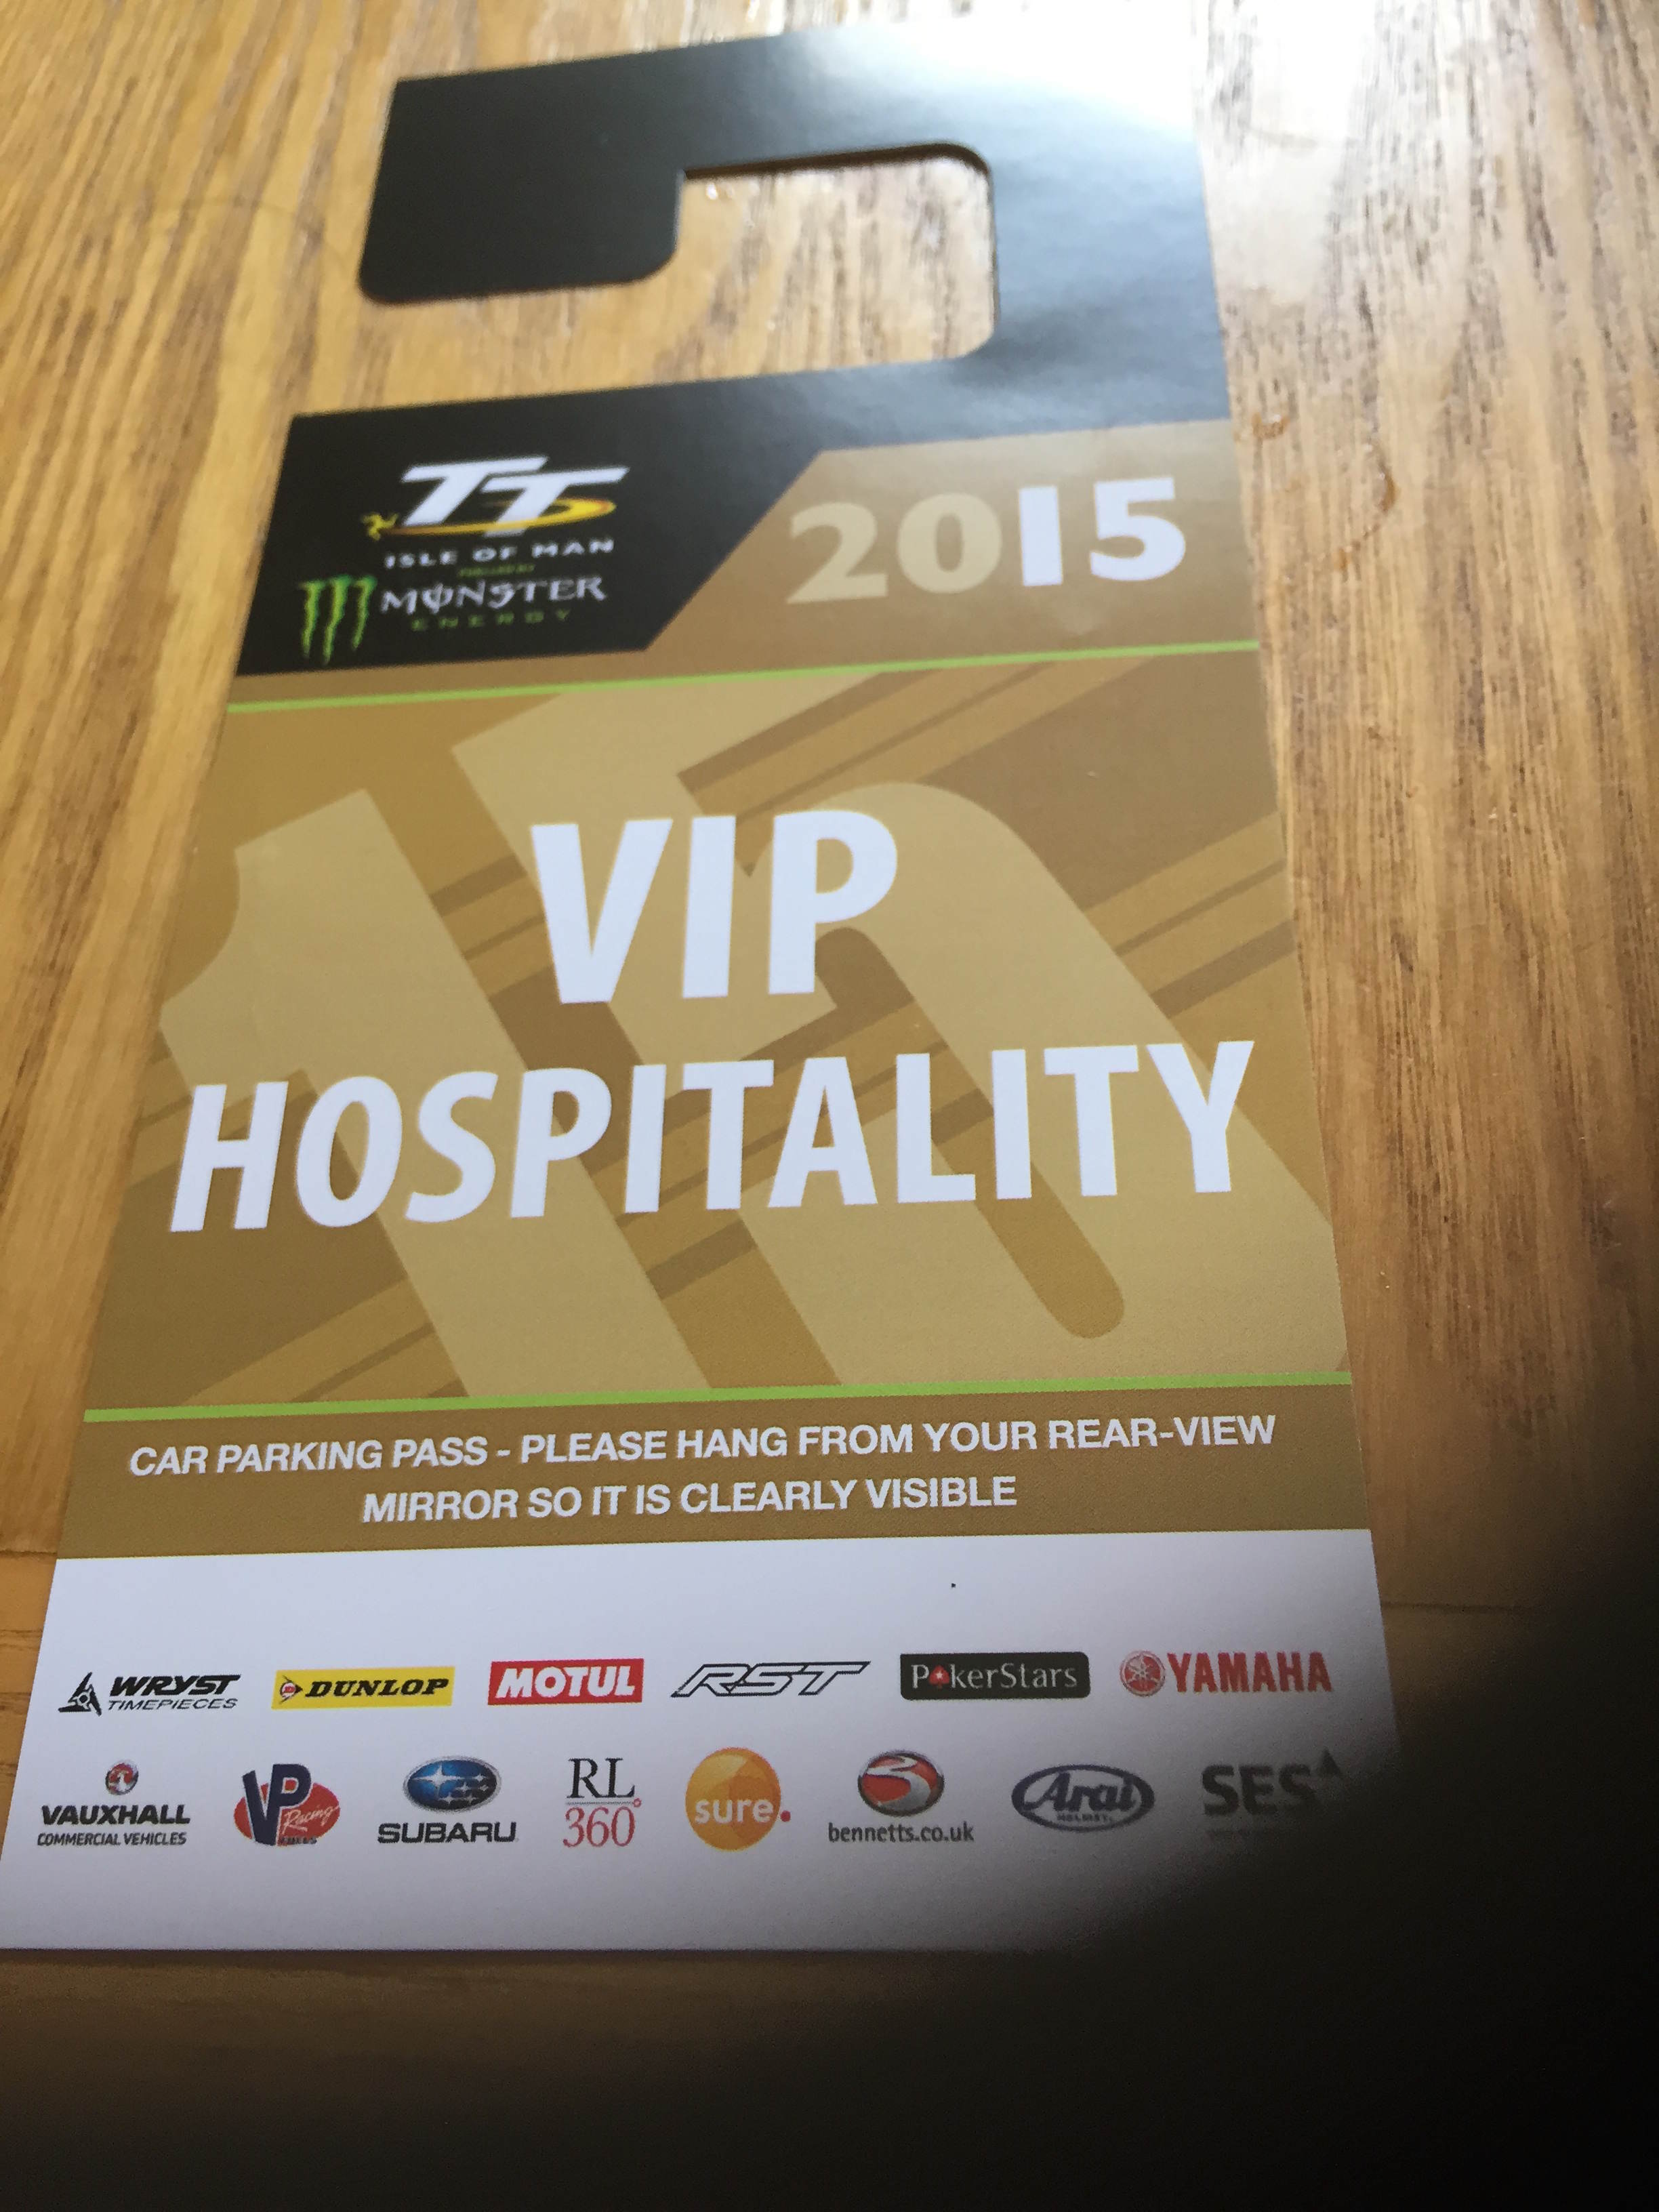 VIP hospitality tickets